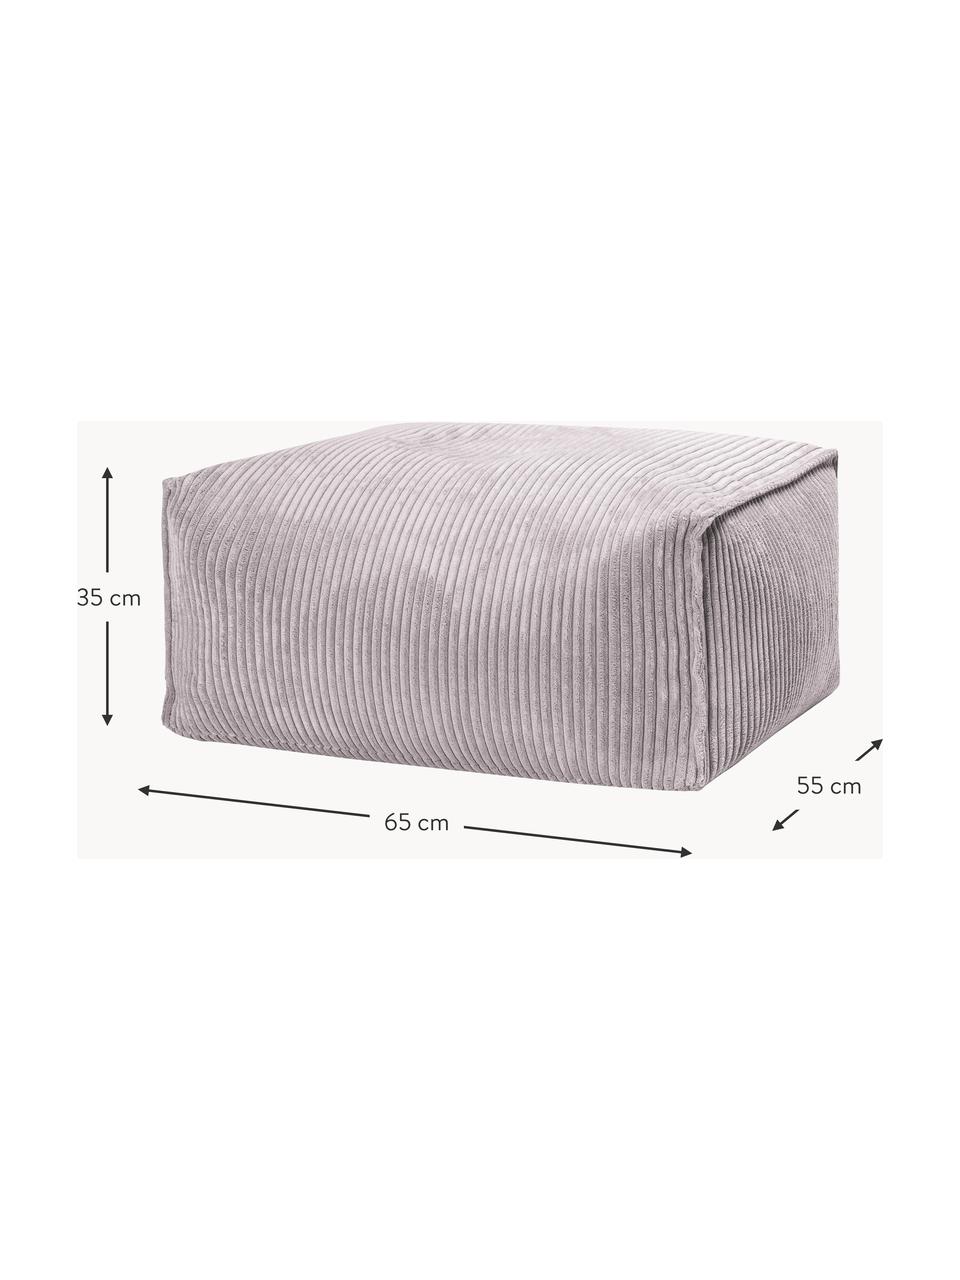 Poduszka podłogowa ze sztruksu Shara, Tapicerka: sztruks (100% poliester), Jasny szary, S 65 x W 35 cm